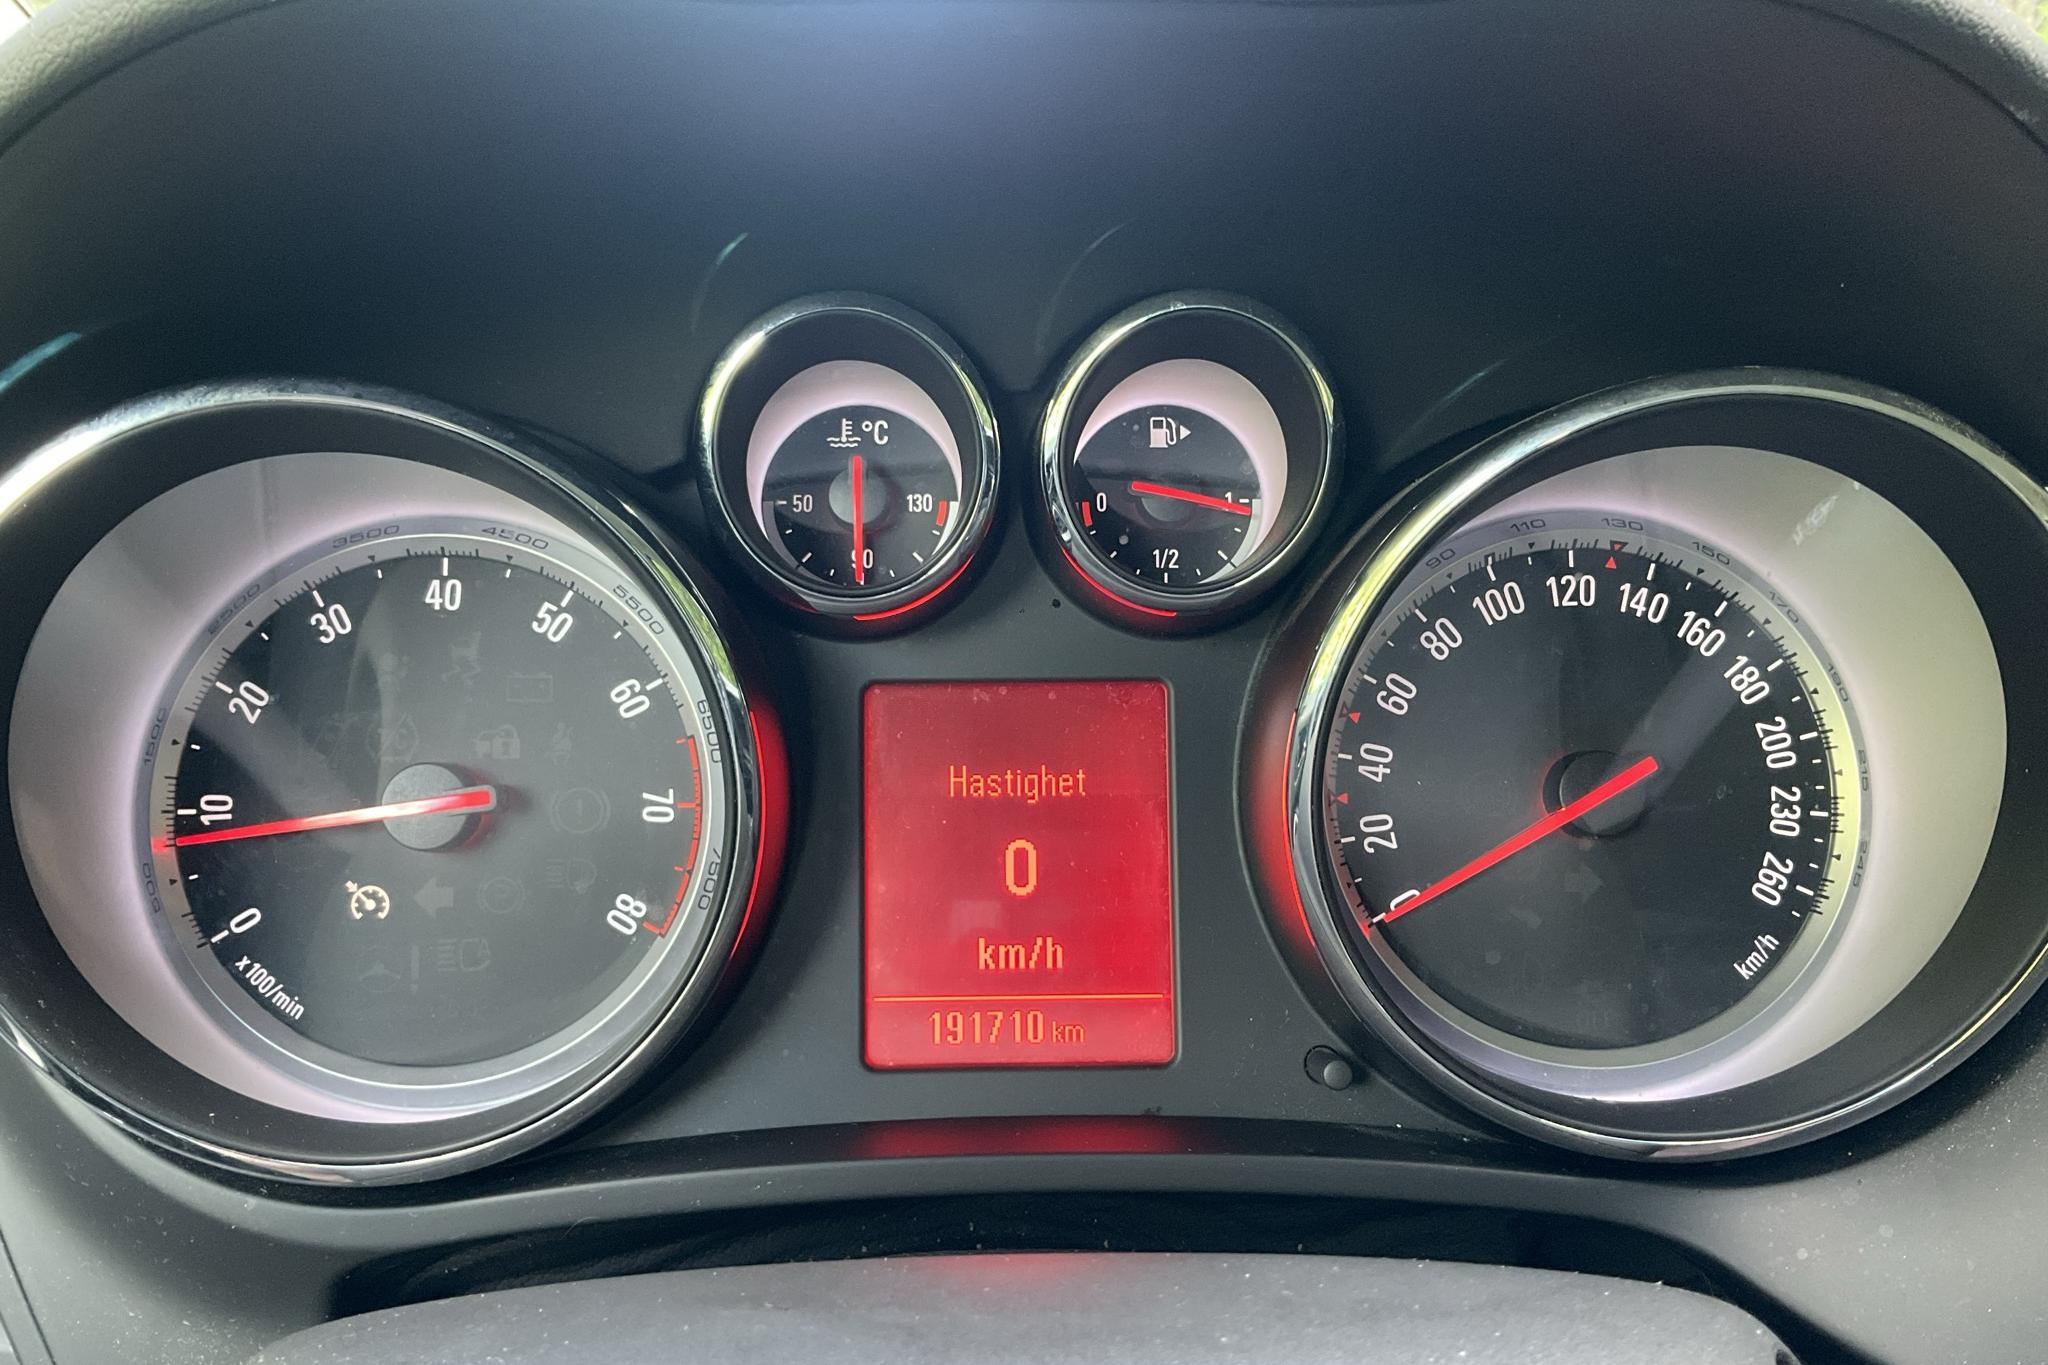 Opel Zafira 1.6 CNG ecoFLEX (150hk) - 19 170 mil - Manuell - vit - 2015